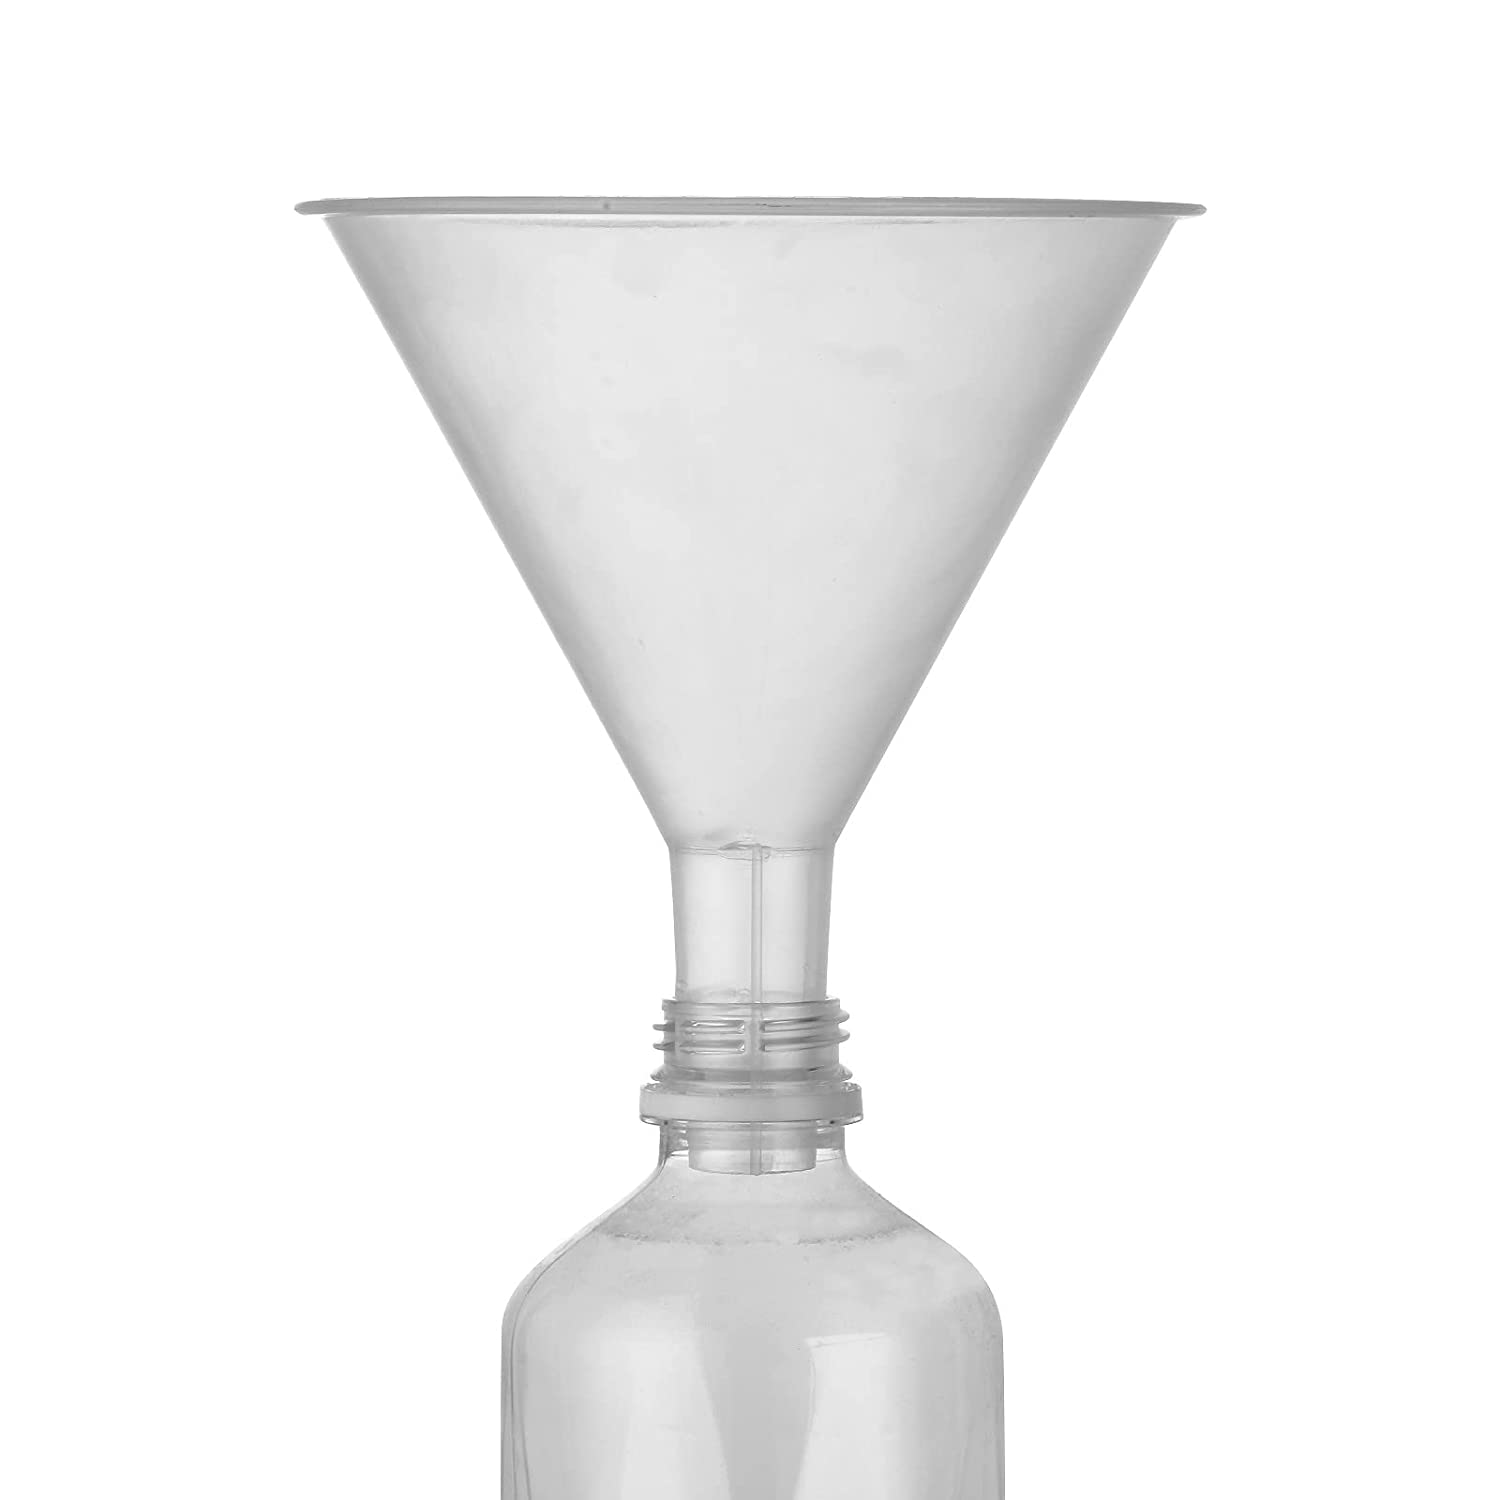 ALPENKOK Plastic Funnels for Filling Bottles - 20pcs 4.8in Kitchen Funnel for Water Bottle Funnel for Liquid Filling Bottle Clear Plastic Funnels for